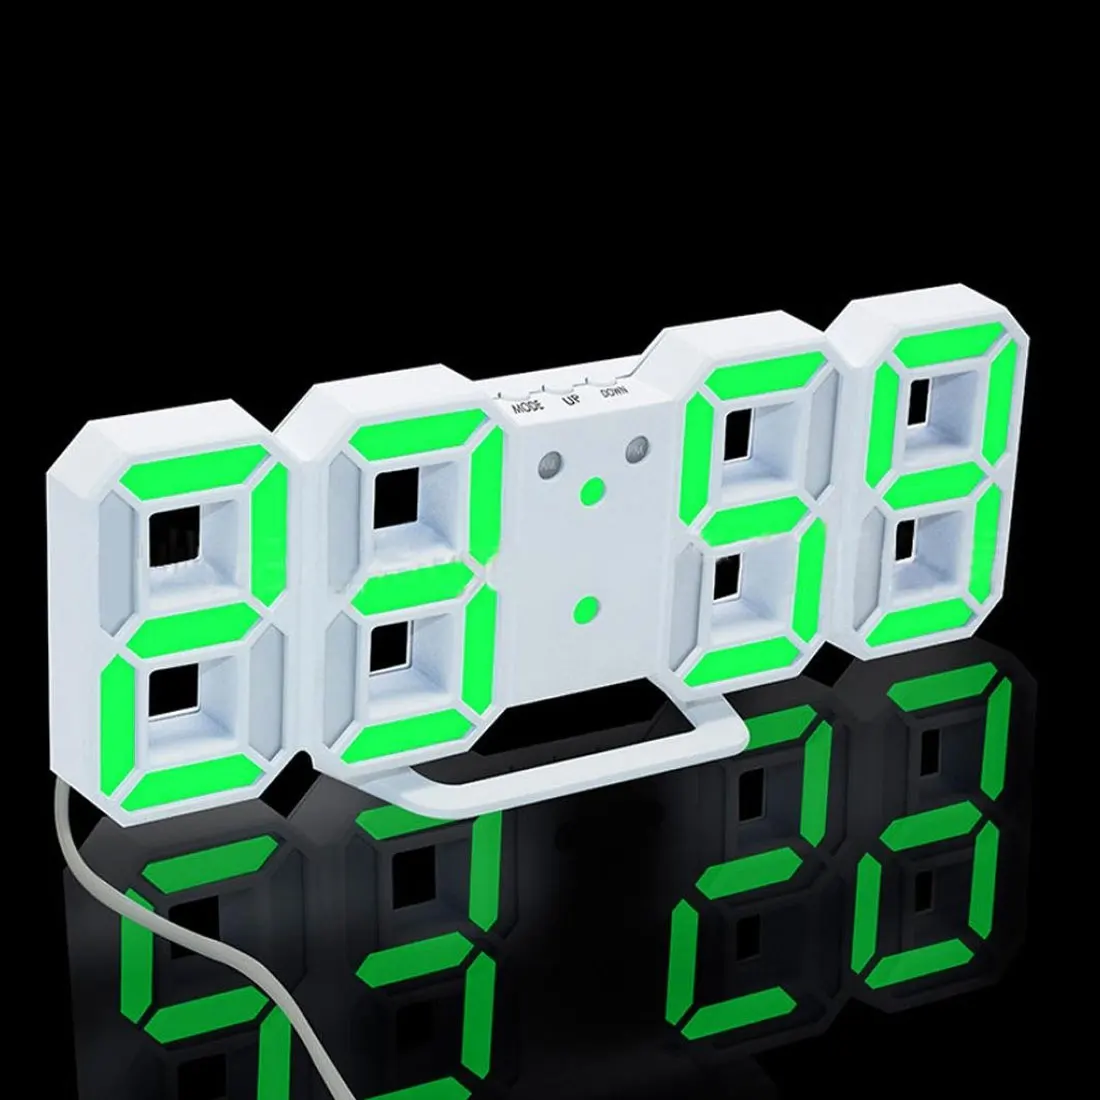 СВЕТОДИОДНЫЙ цифровой настольные часы 24 или 12 часов, механизм отображения будильника, настольные часы, современные настенные часы - Цвет: White and Green